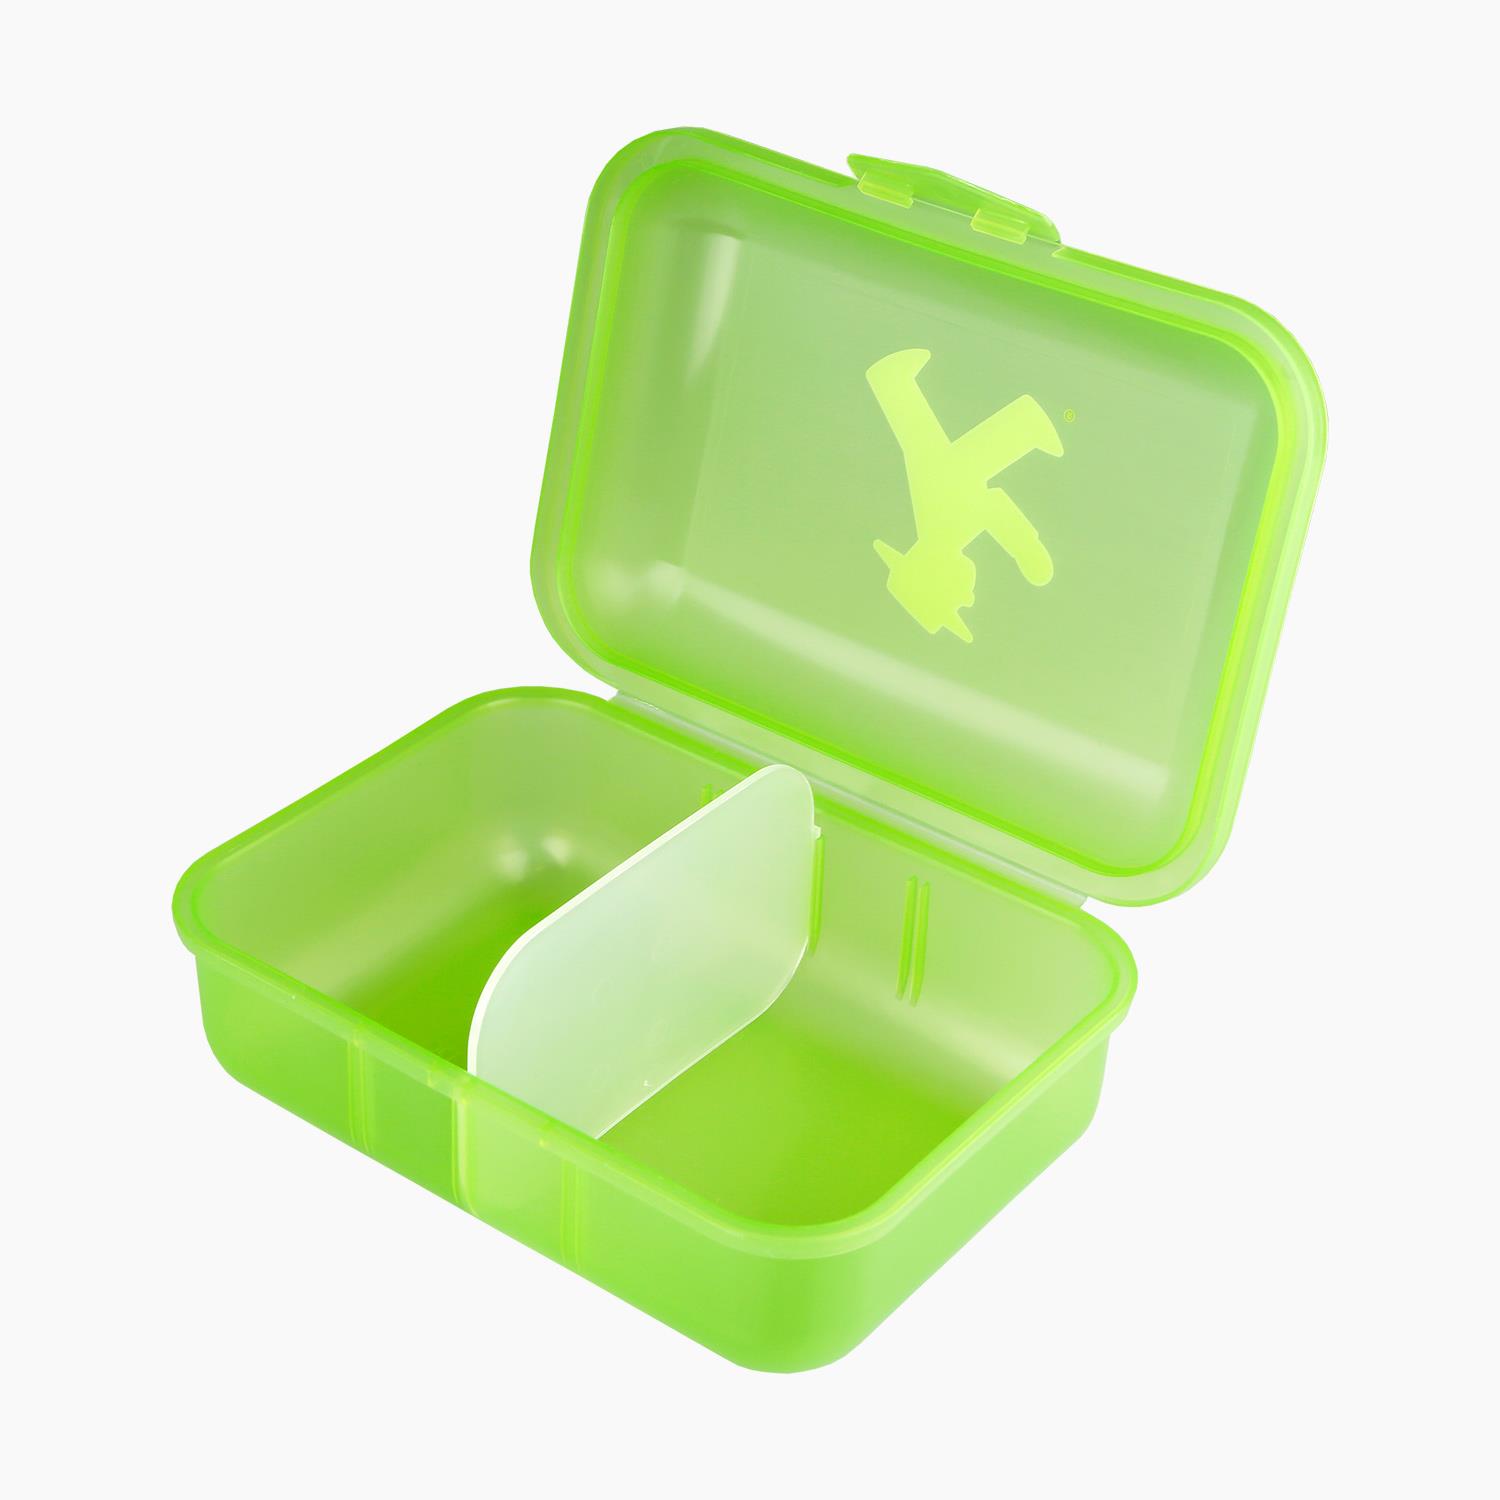 PAUSIERER green/ Lunch Box